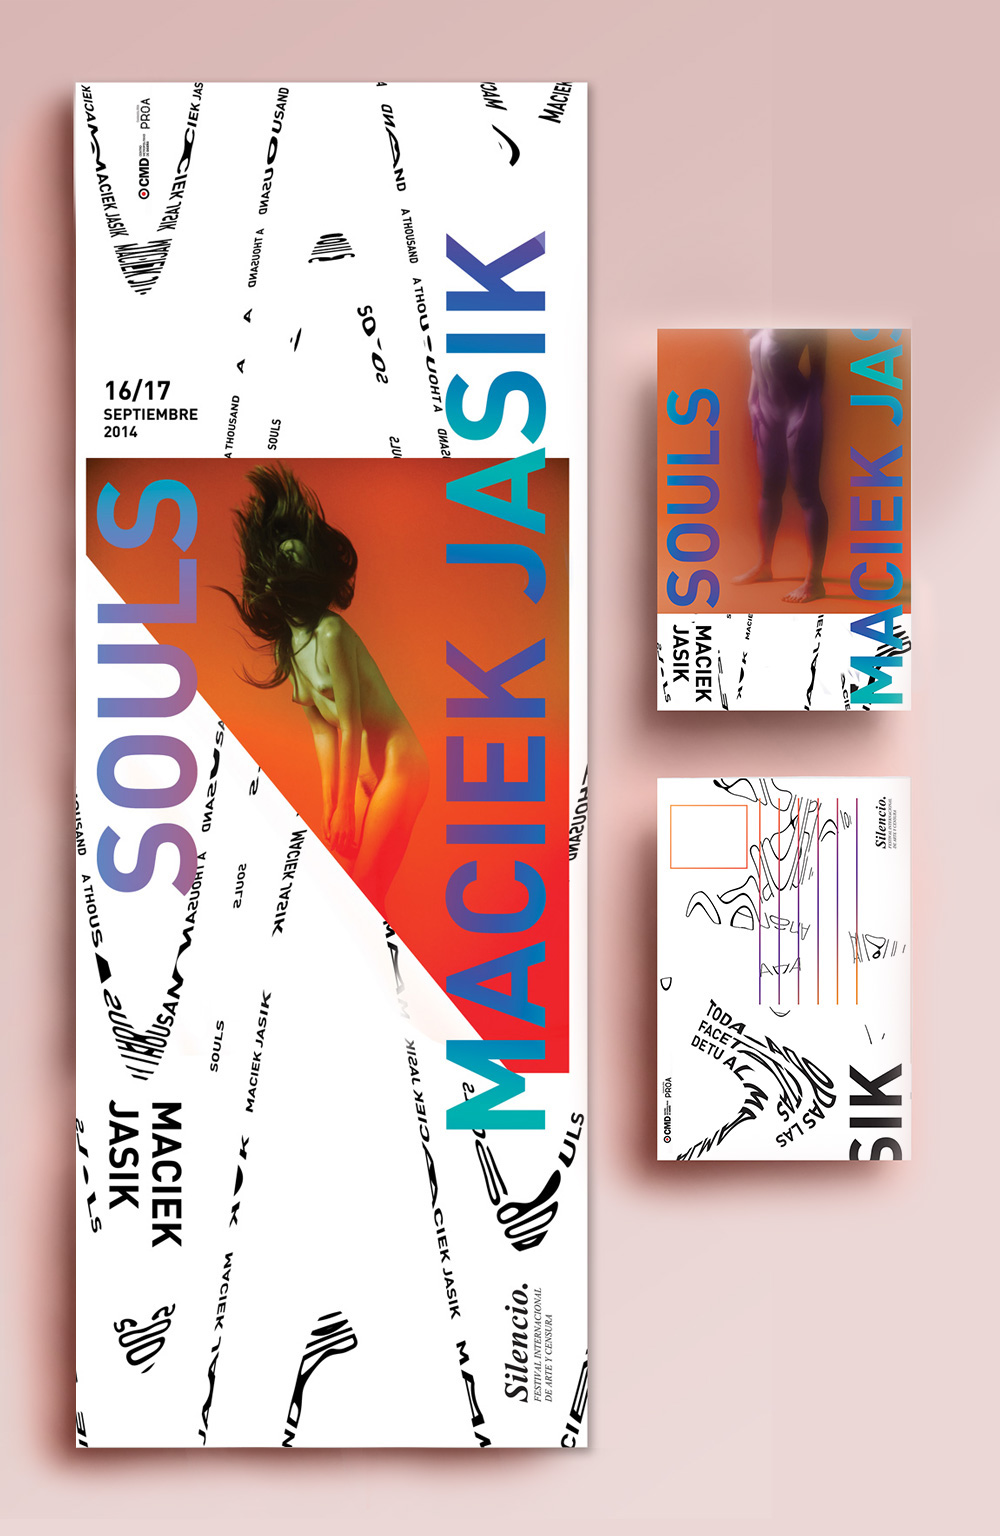 Exhibition  exhibición poster triptic flyer expo tipografia experimental fadu uba diseño gráfico